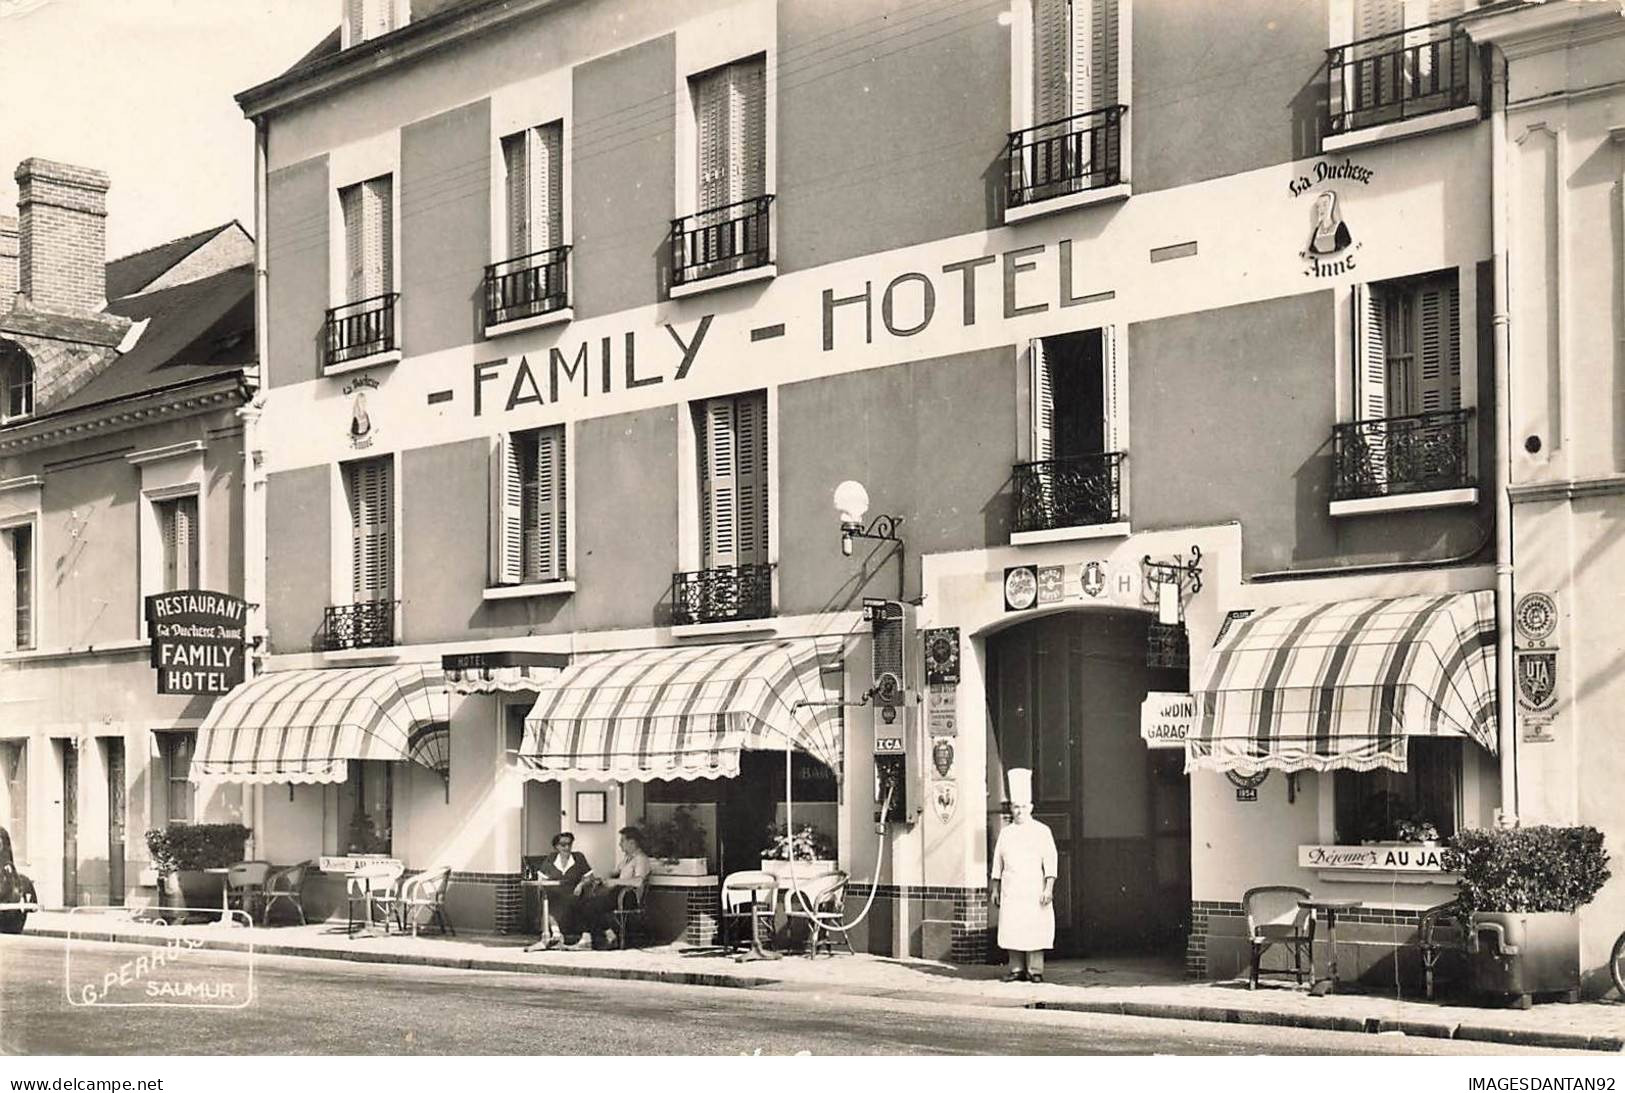 37 LANGEAIS #AS38235 FAMILY HOTEL LA DUCHESSE ANNE - Langeais